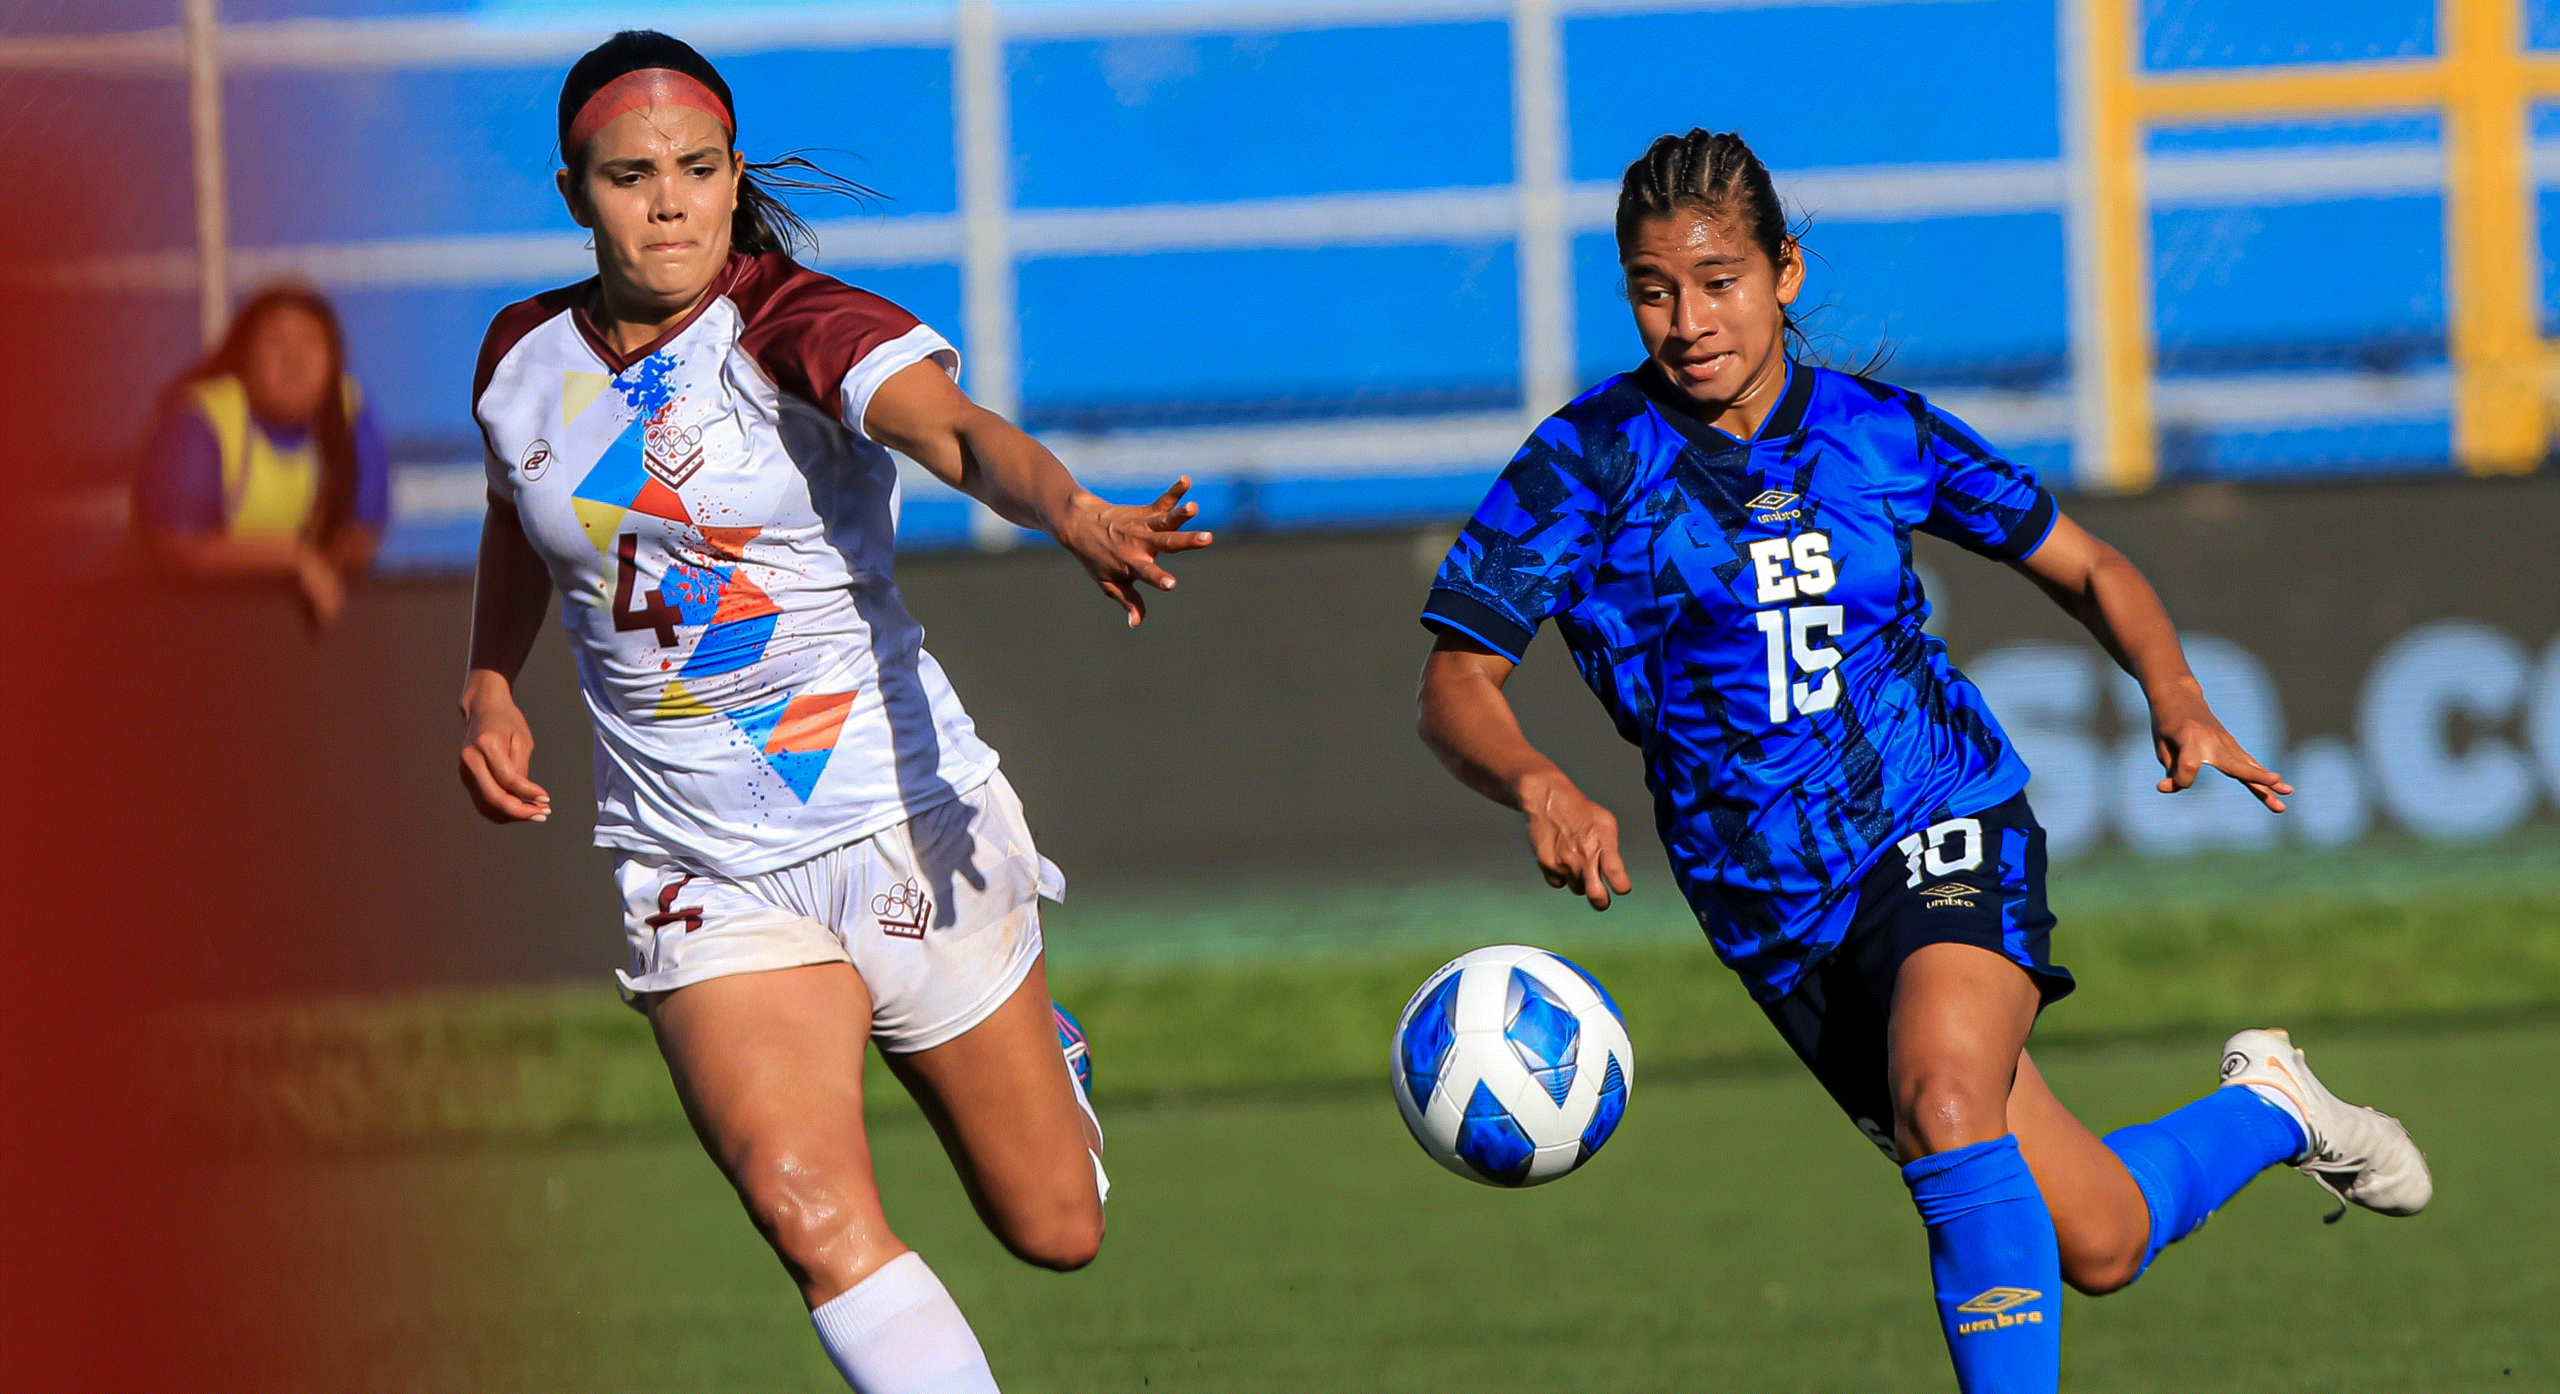 El Salvador cae ante Venezuela en semifinales del fútbol femenino y enfrentará a Centro Caribe Sports por la medalla de bronce.